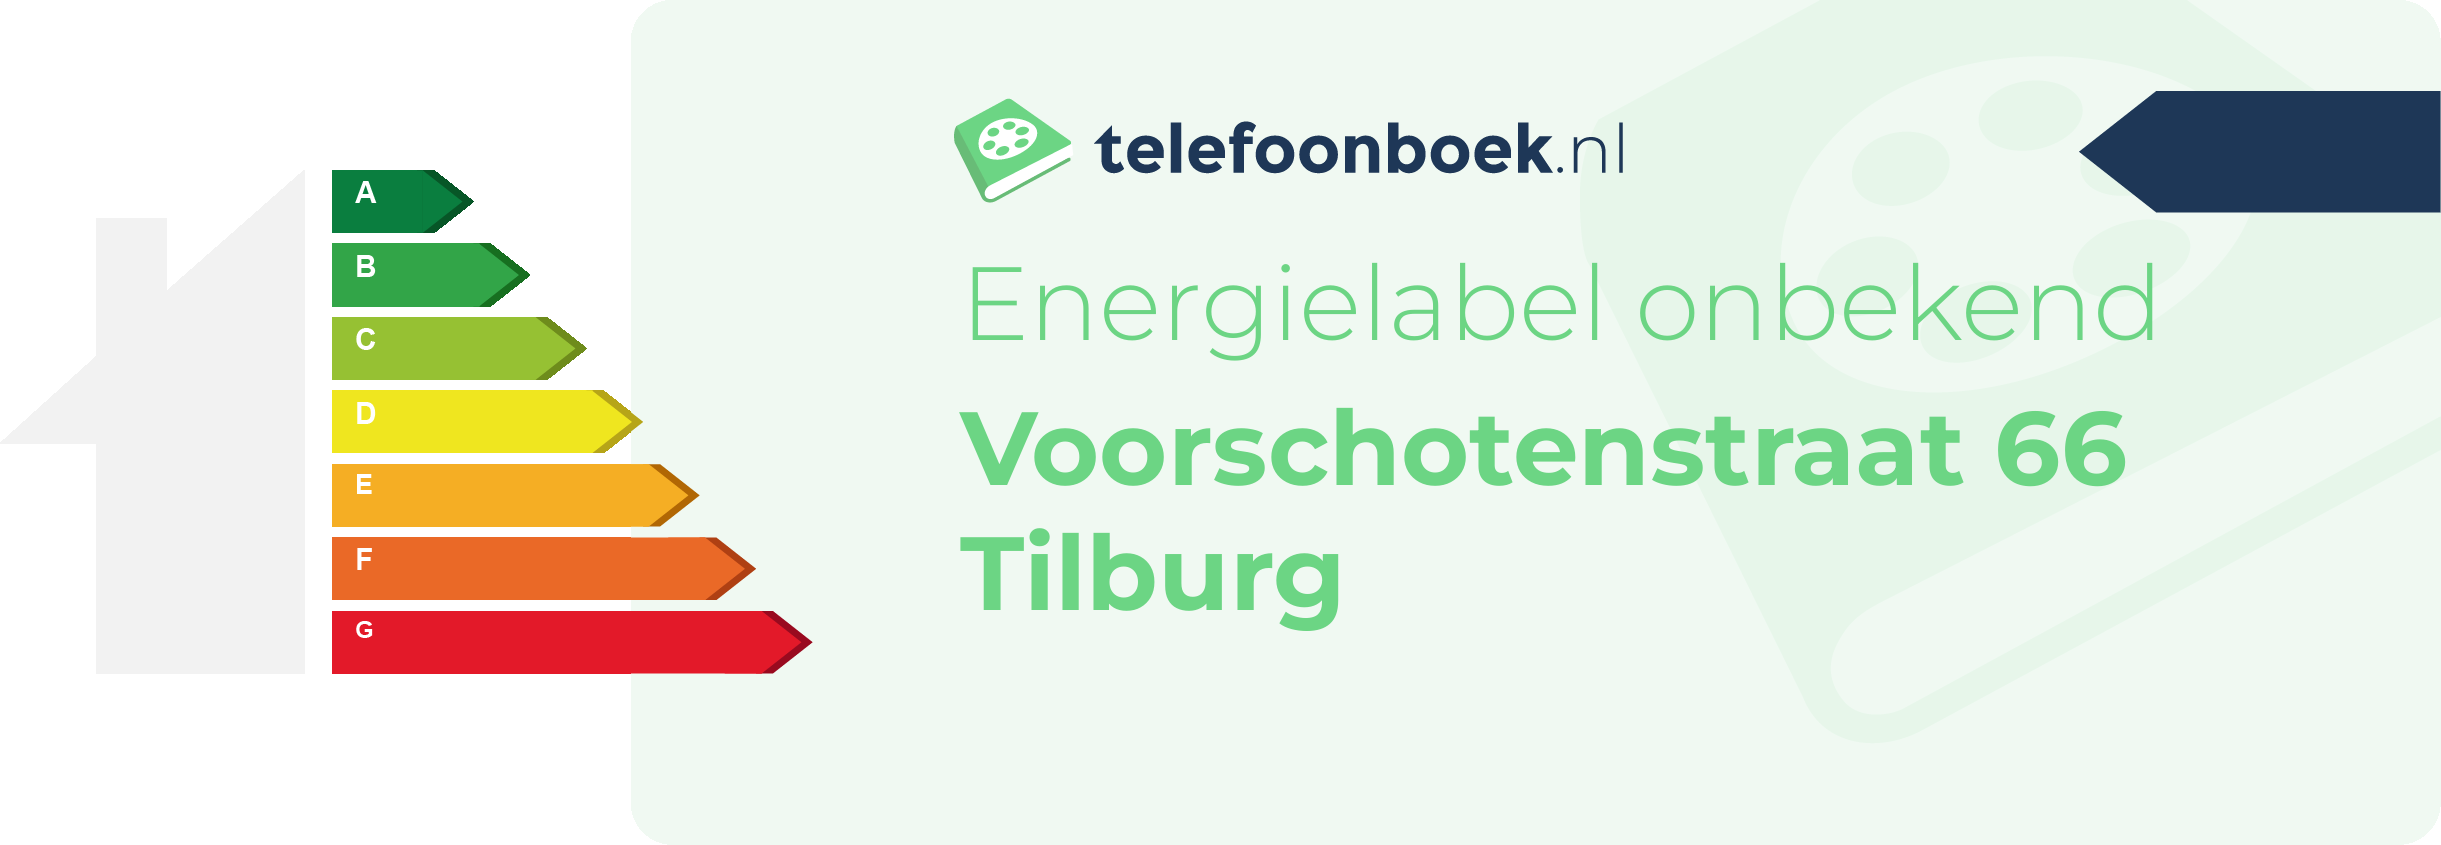 Energielabel Voorschotenstraat 66 Tilburg